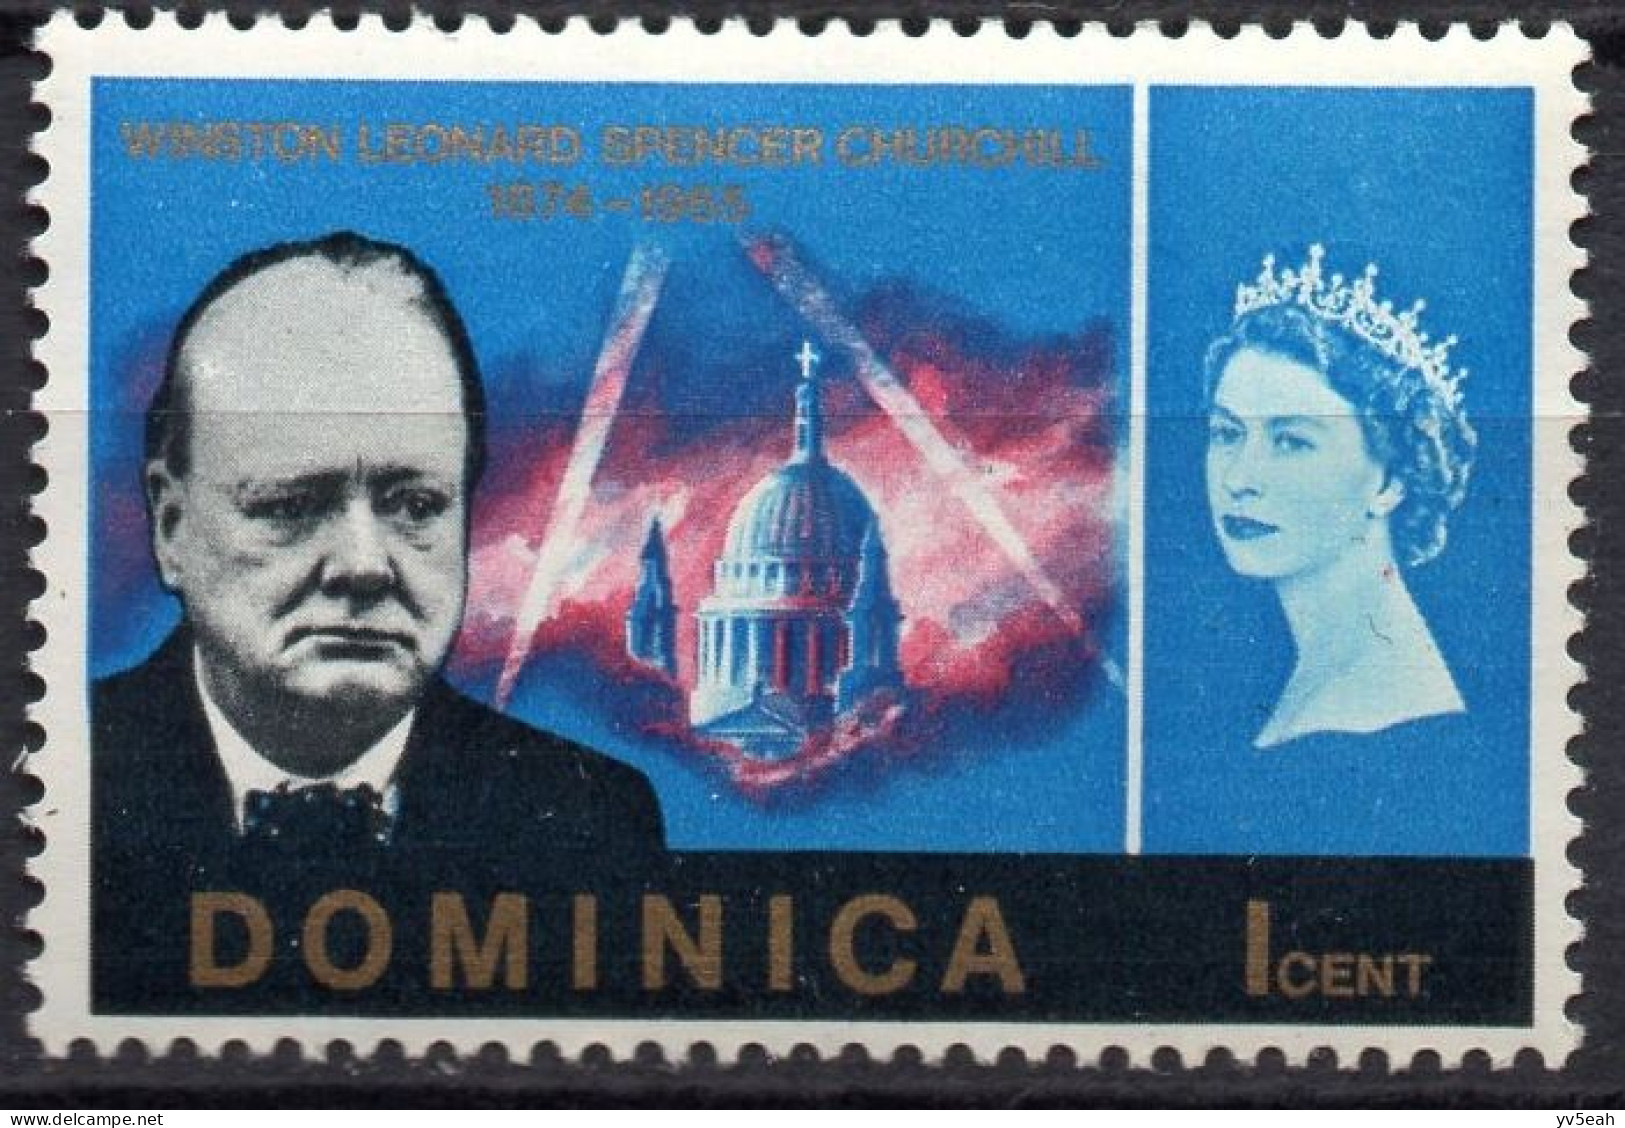 DOMINICA/1965/MNH/SC#189/ SIR WINSTON CHURCHILL MEMORIAL ISSUE/ 1c BRIGHT BLUE - Dominique (...-1978)